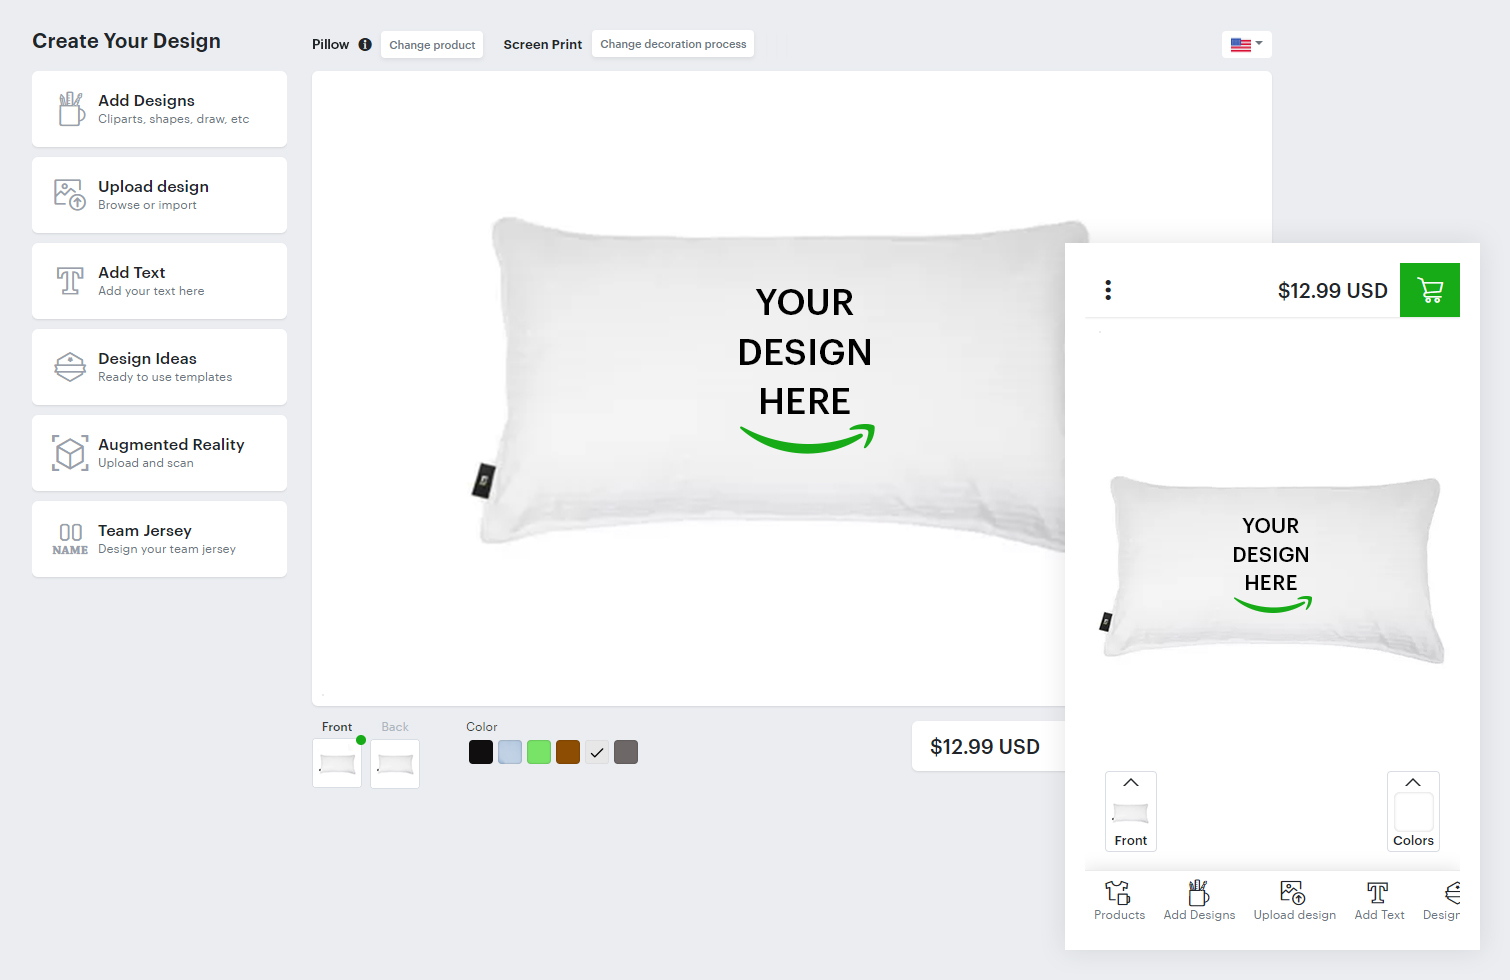 Pillow Design software